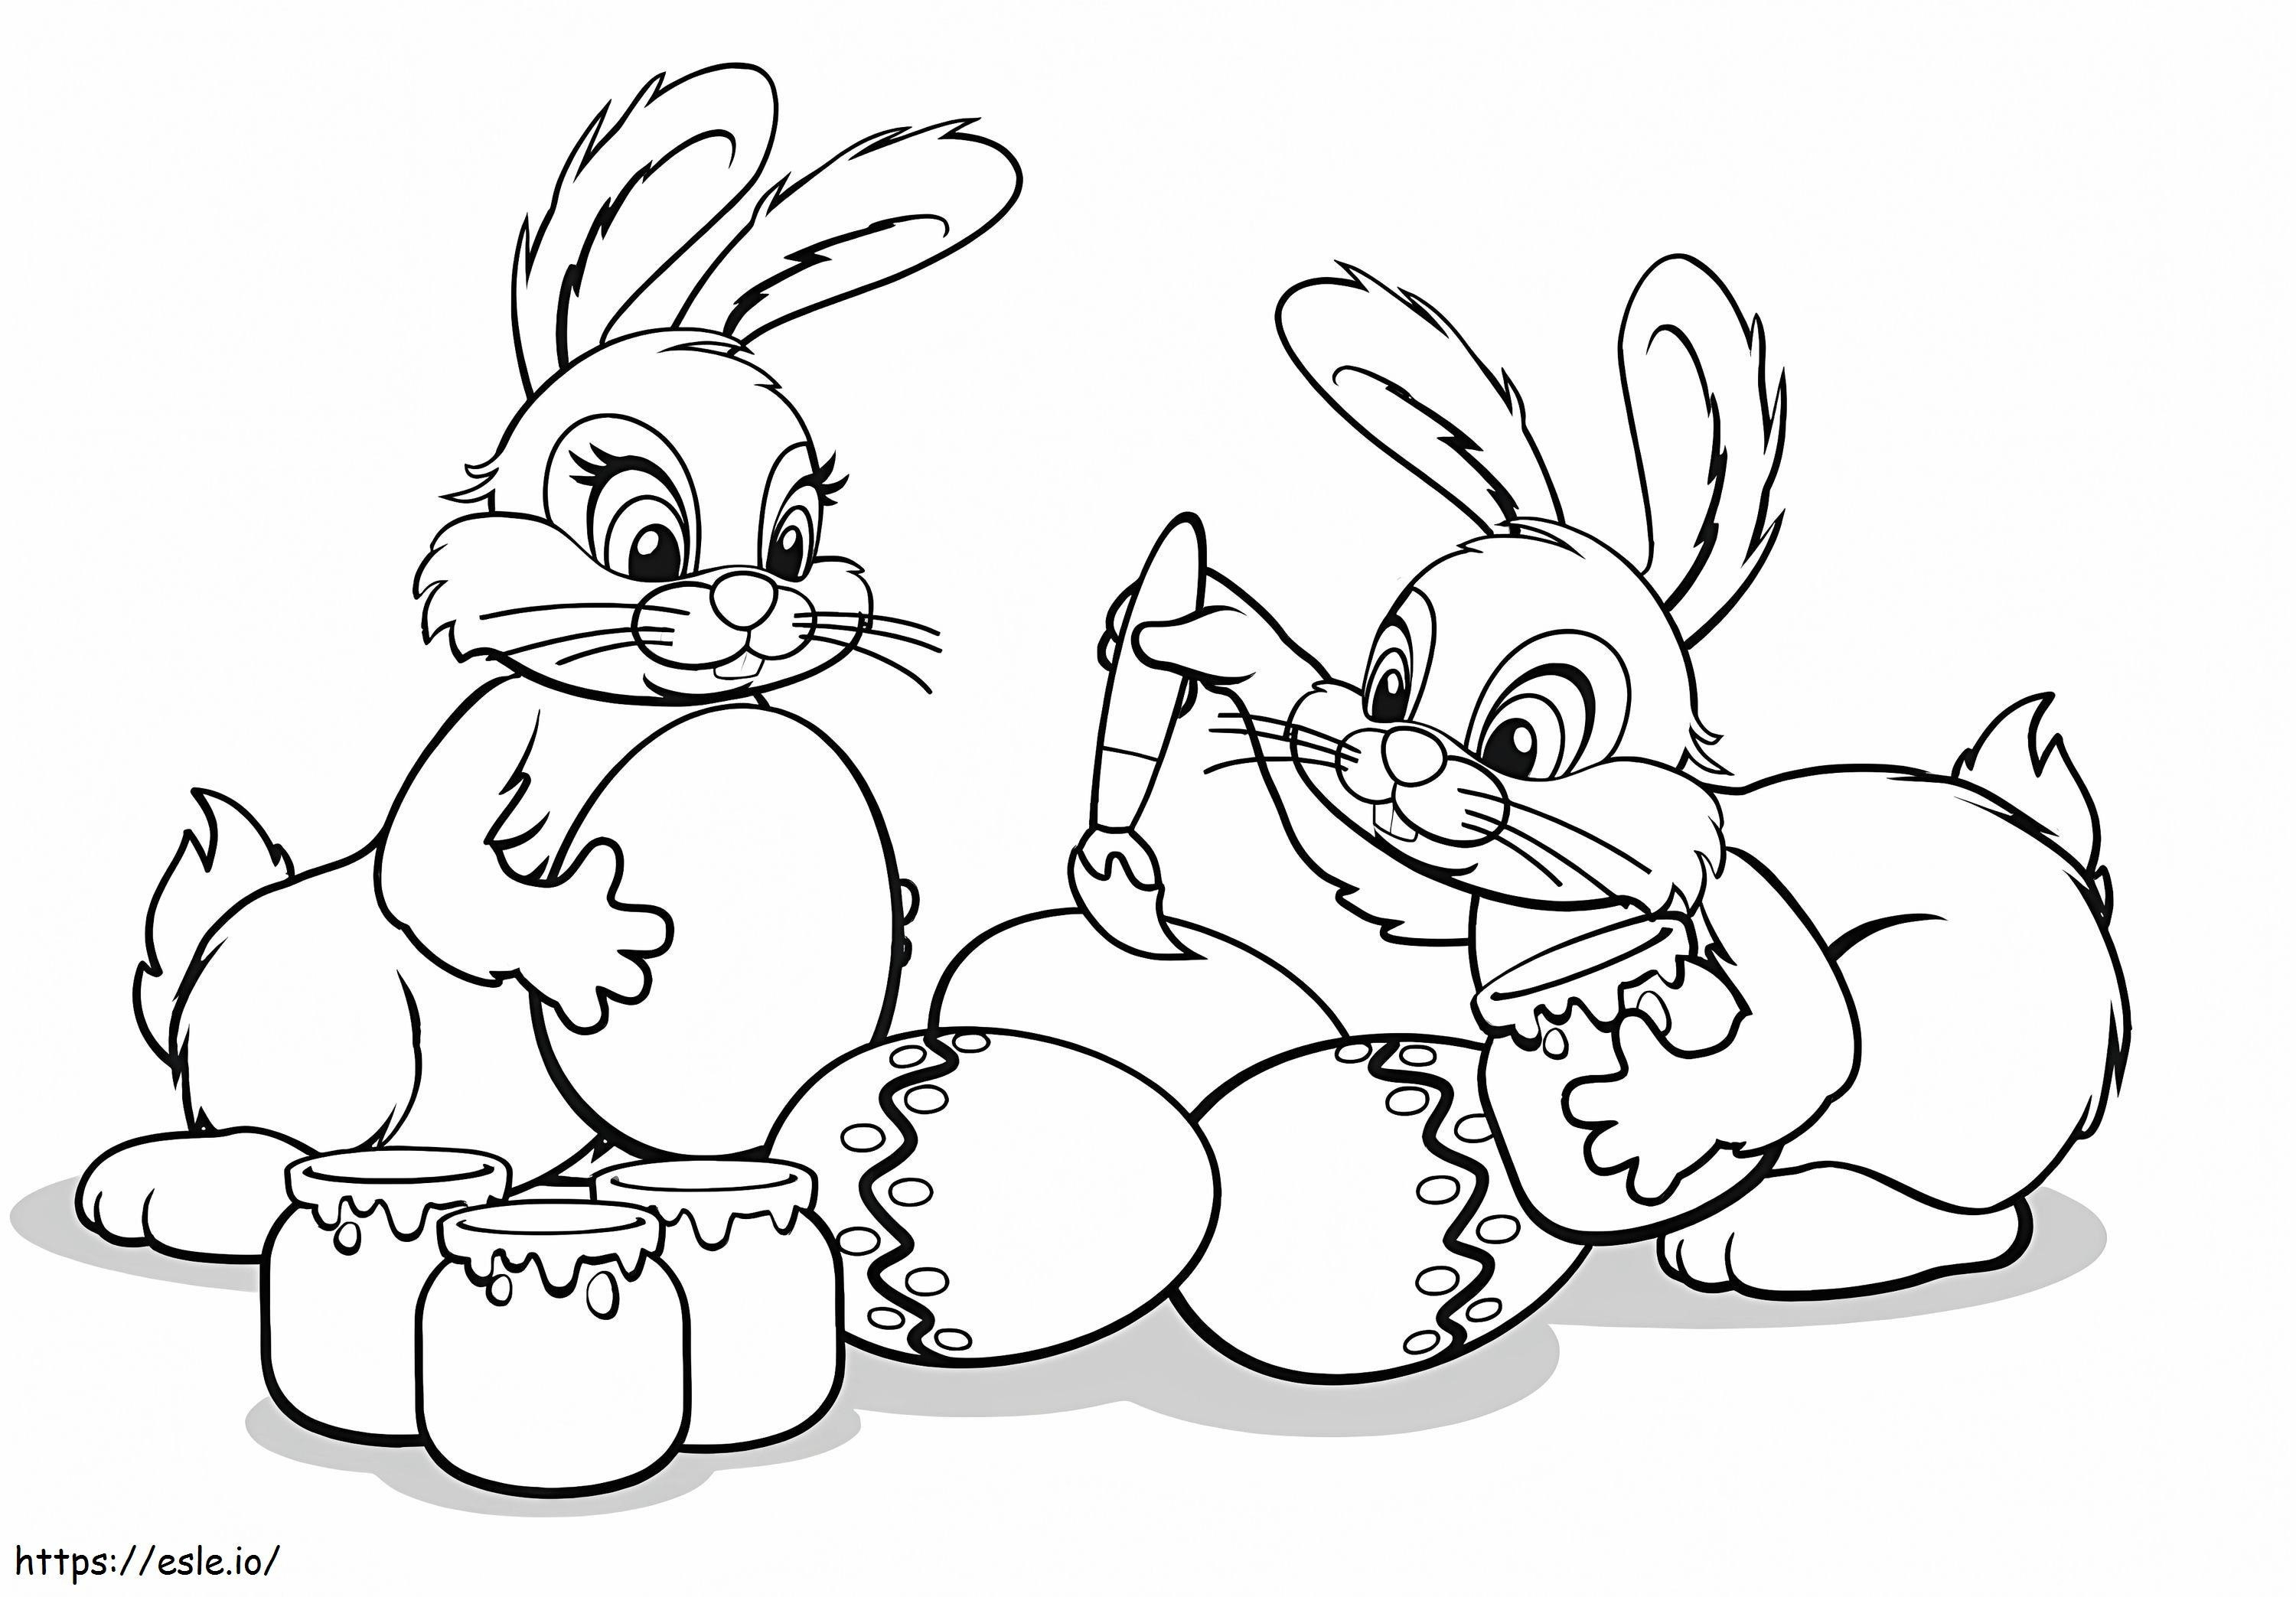 Disegno di due coniglietti da colorare